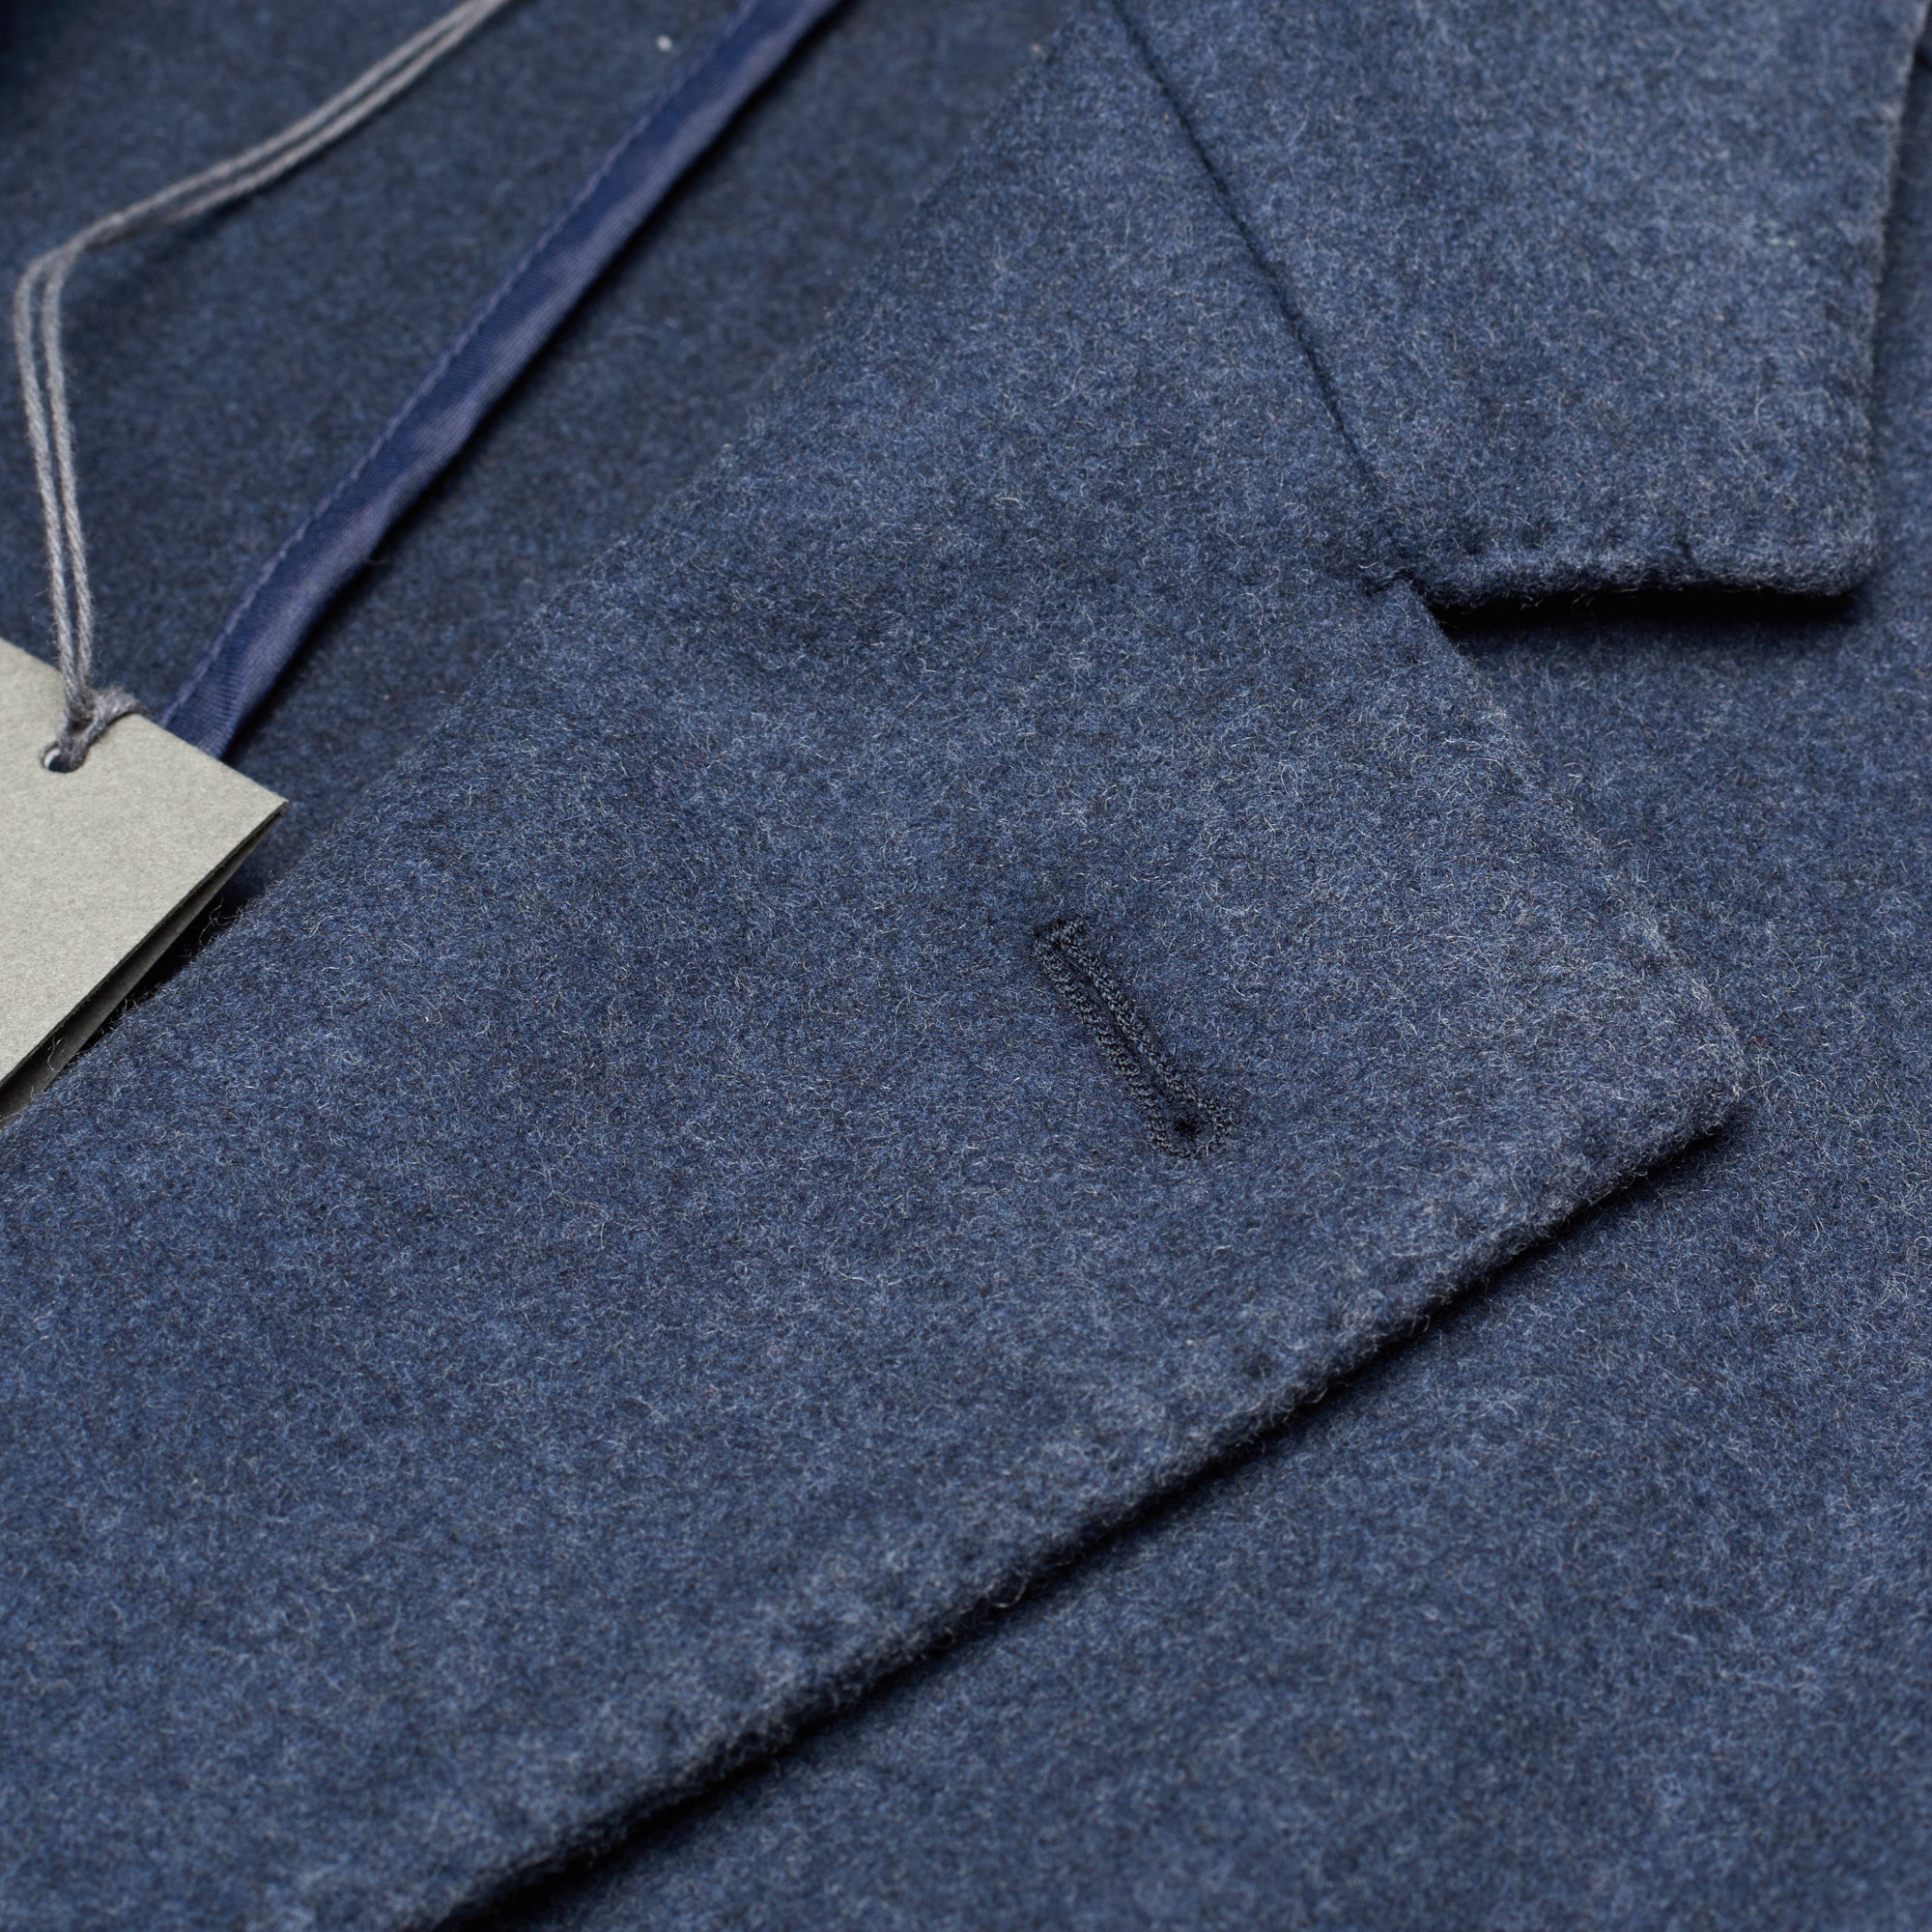 BOGLIOLI Milano Blue Wool Flannel Unlined Over Coat NEW BOGLIOLI